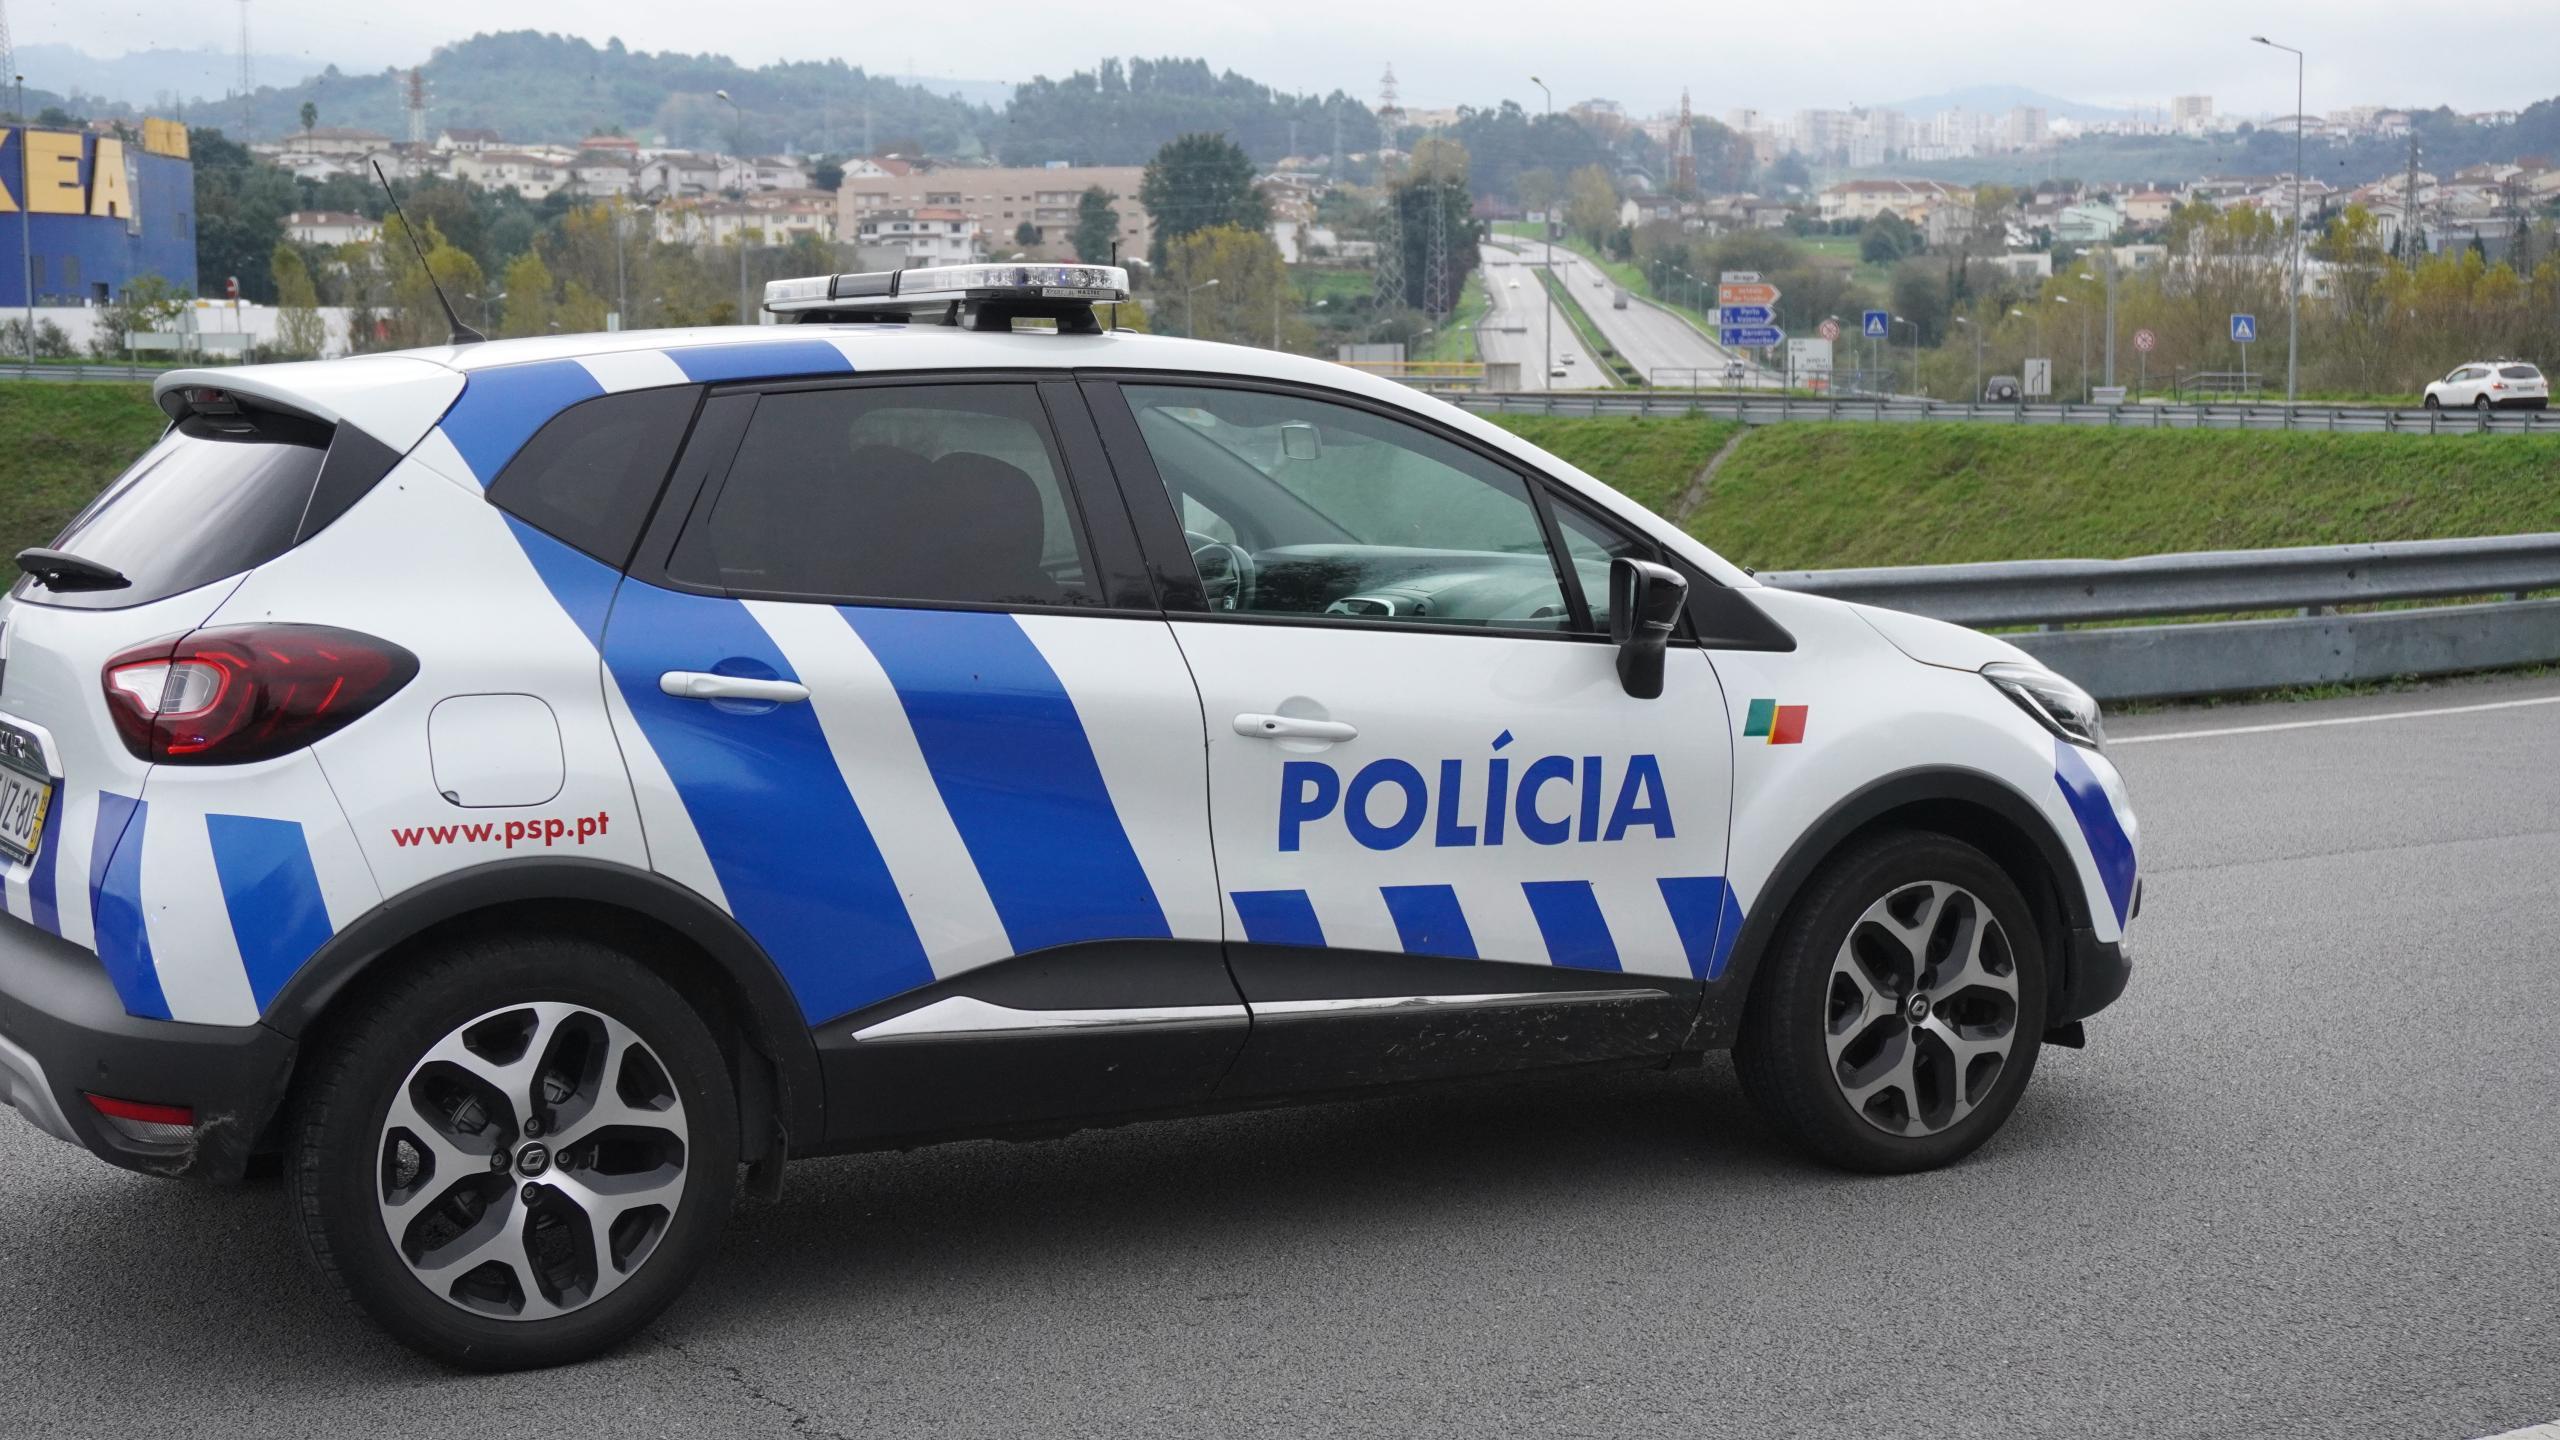 PSP deteve 28 pessoas na semana passada no distrito de Braga